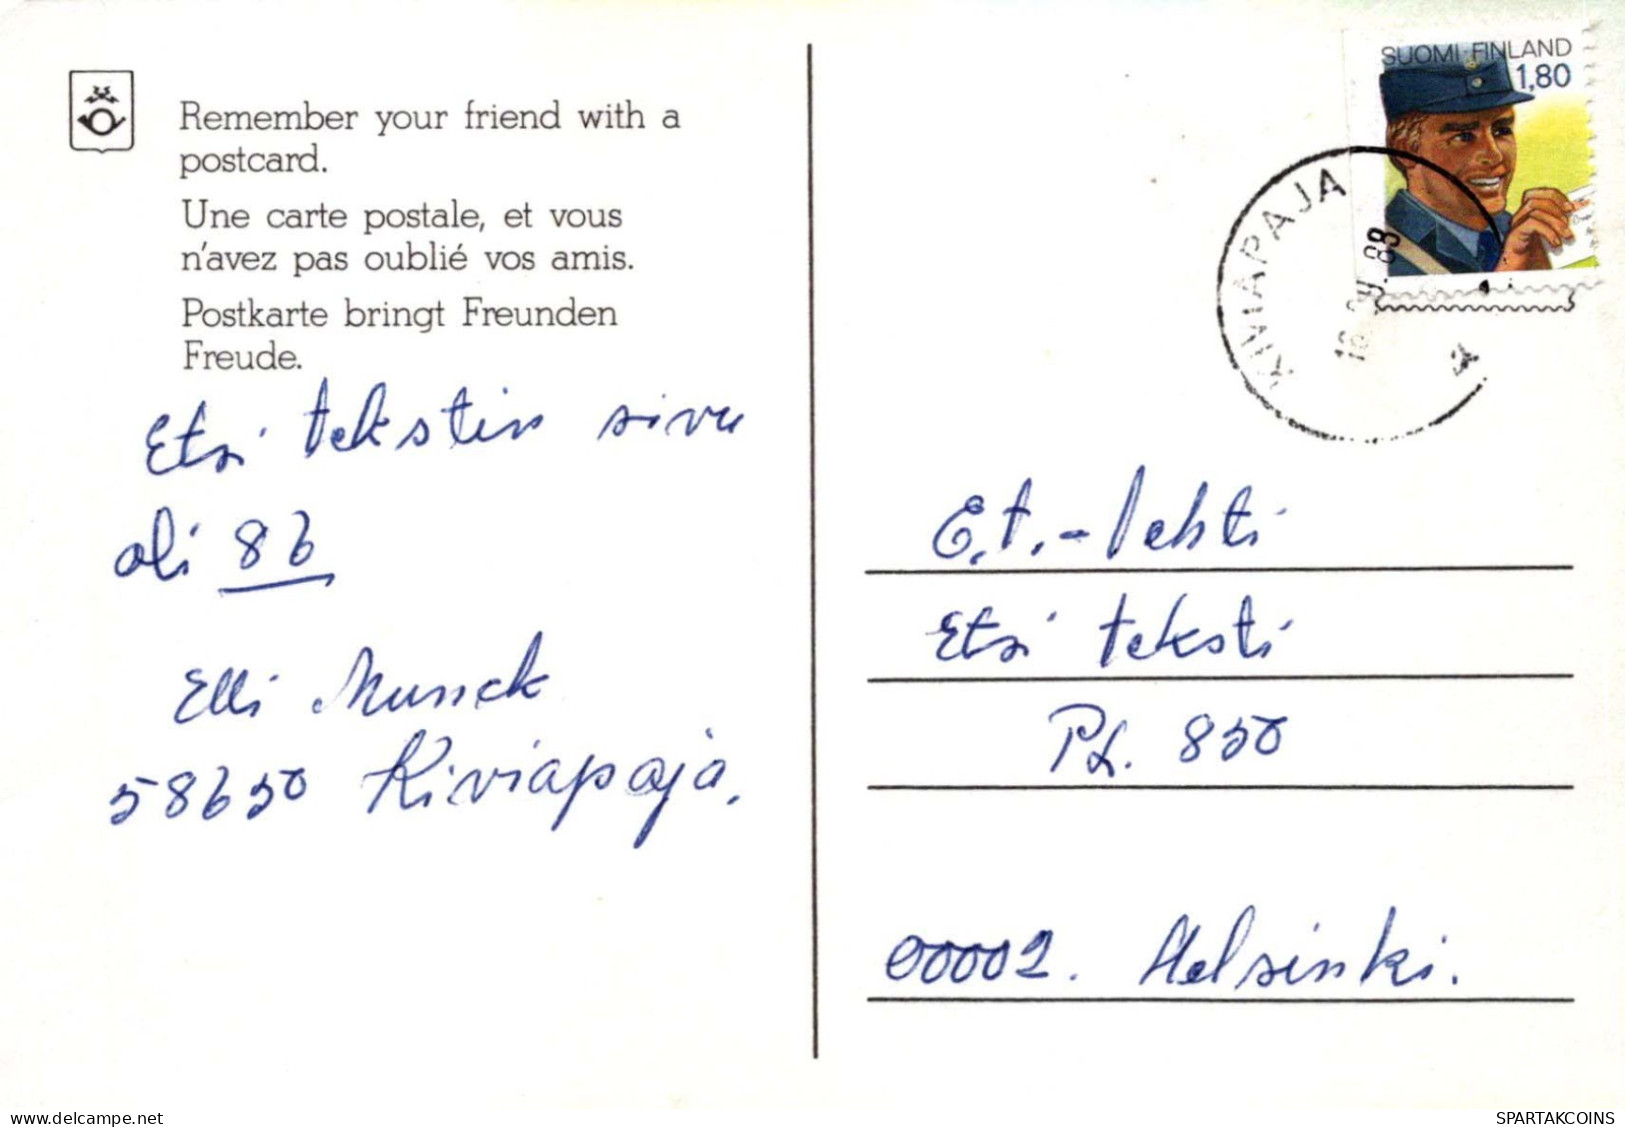 NIÑOS HUMOR Vintage Tarjeta Postal CPSM #PBV179.A - Humorous Cards